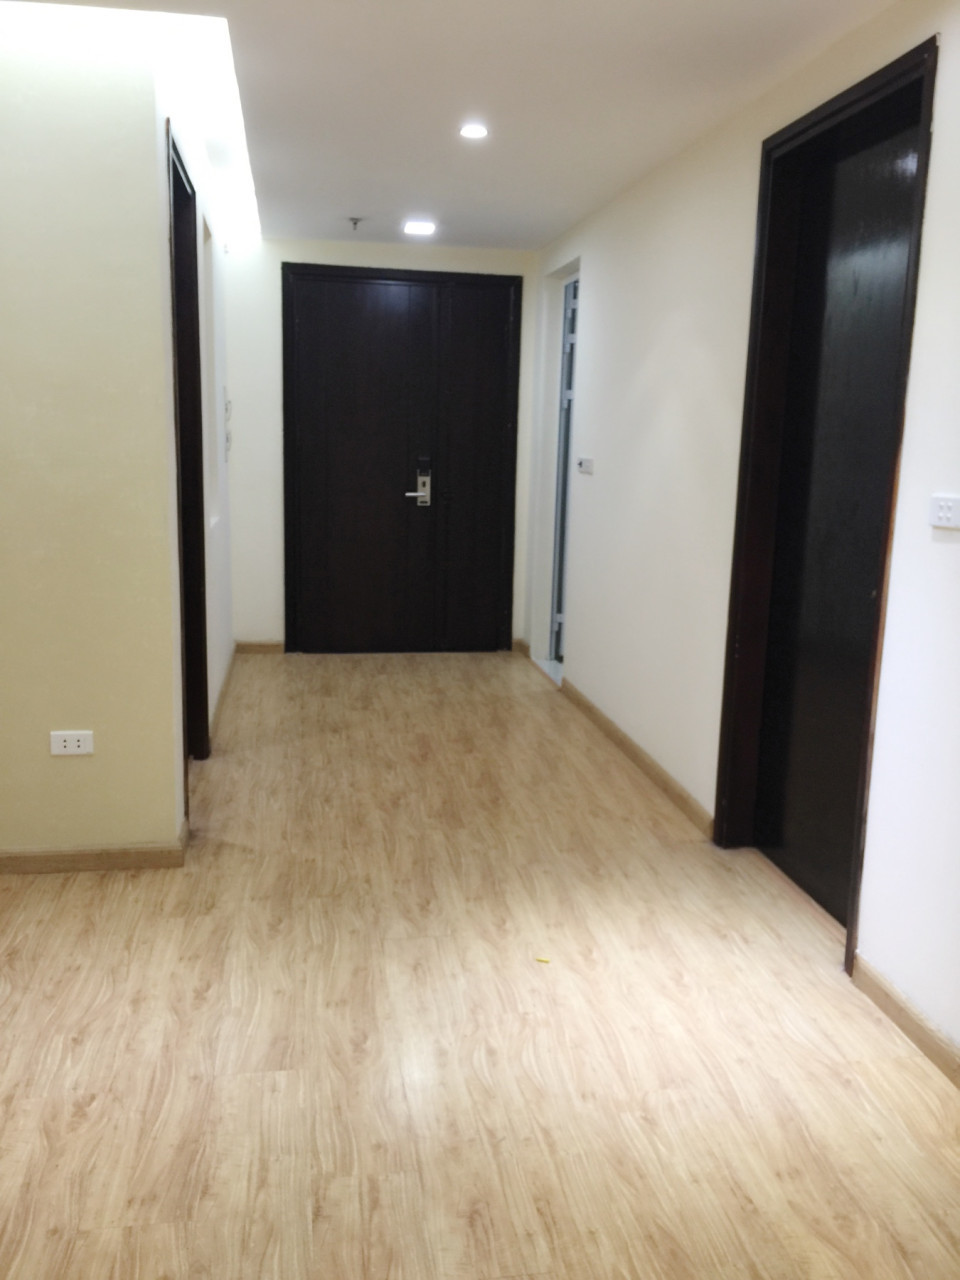 Căn hộ 95m2, 2 phòng ngủ chung cư Cao cấp Golden Land  - 275 Nguyễn Trãi đầy đủ nội thất cơ bản cho thuê 9 triệu/tháng. Liên hệ: 01678.182.667 696777